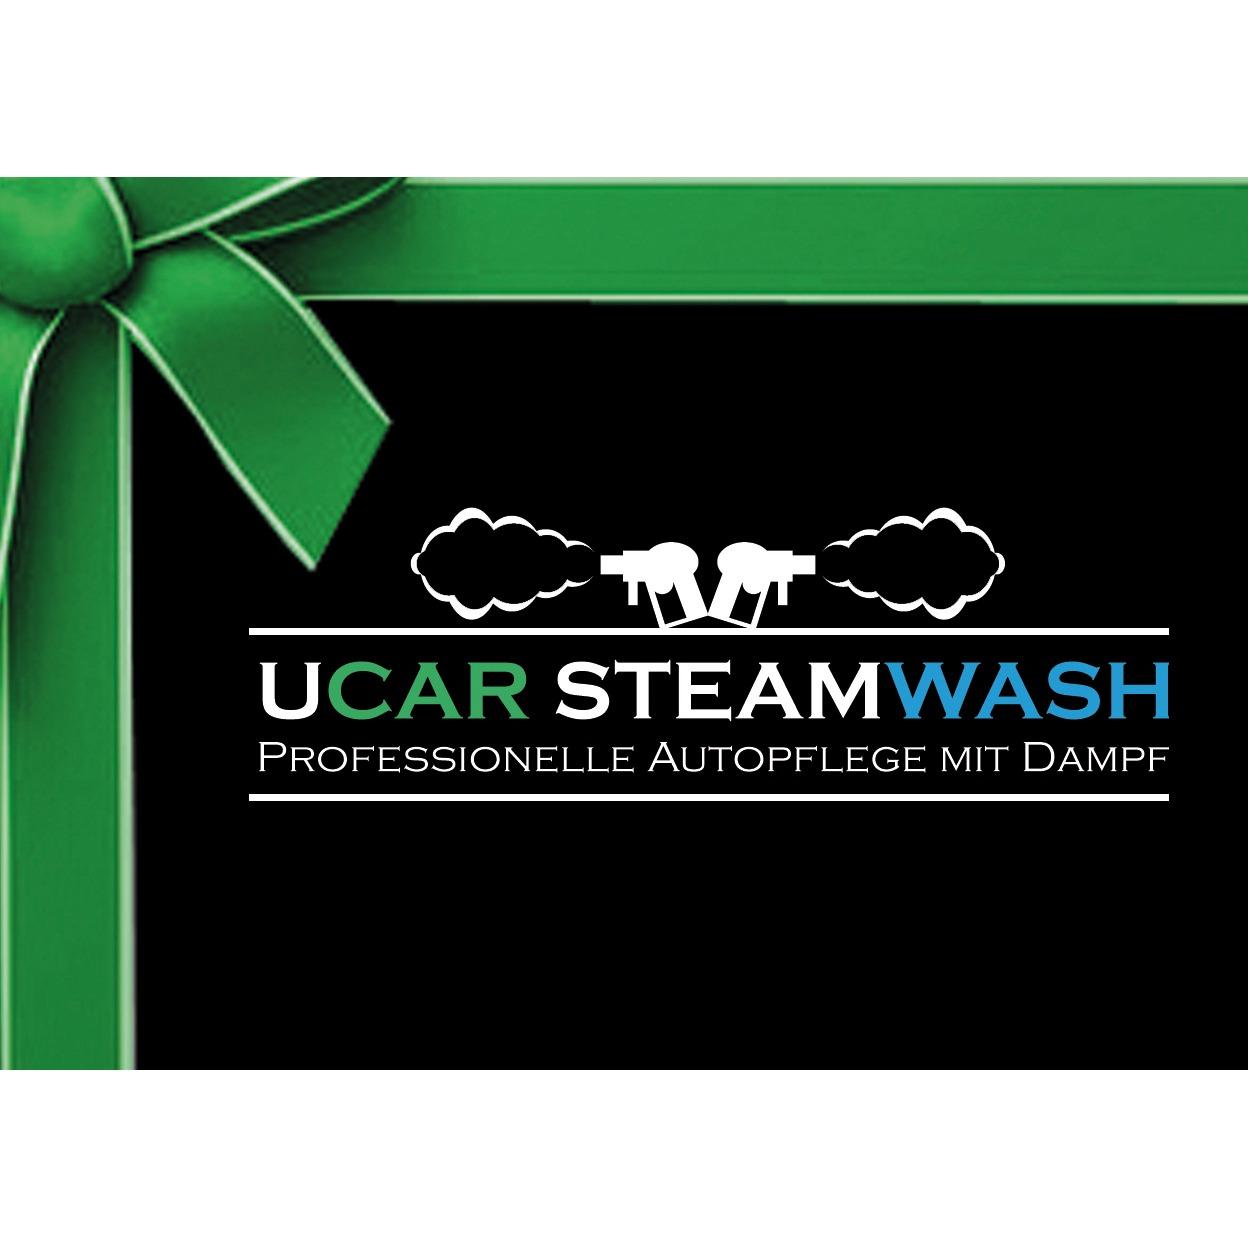 Ucar SteamWash - Autopflege Bonn - Keramikversiegelung - Lederreparatur Logo